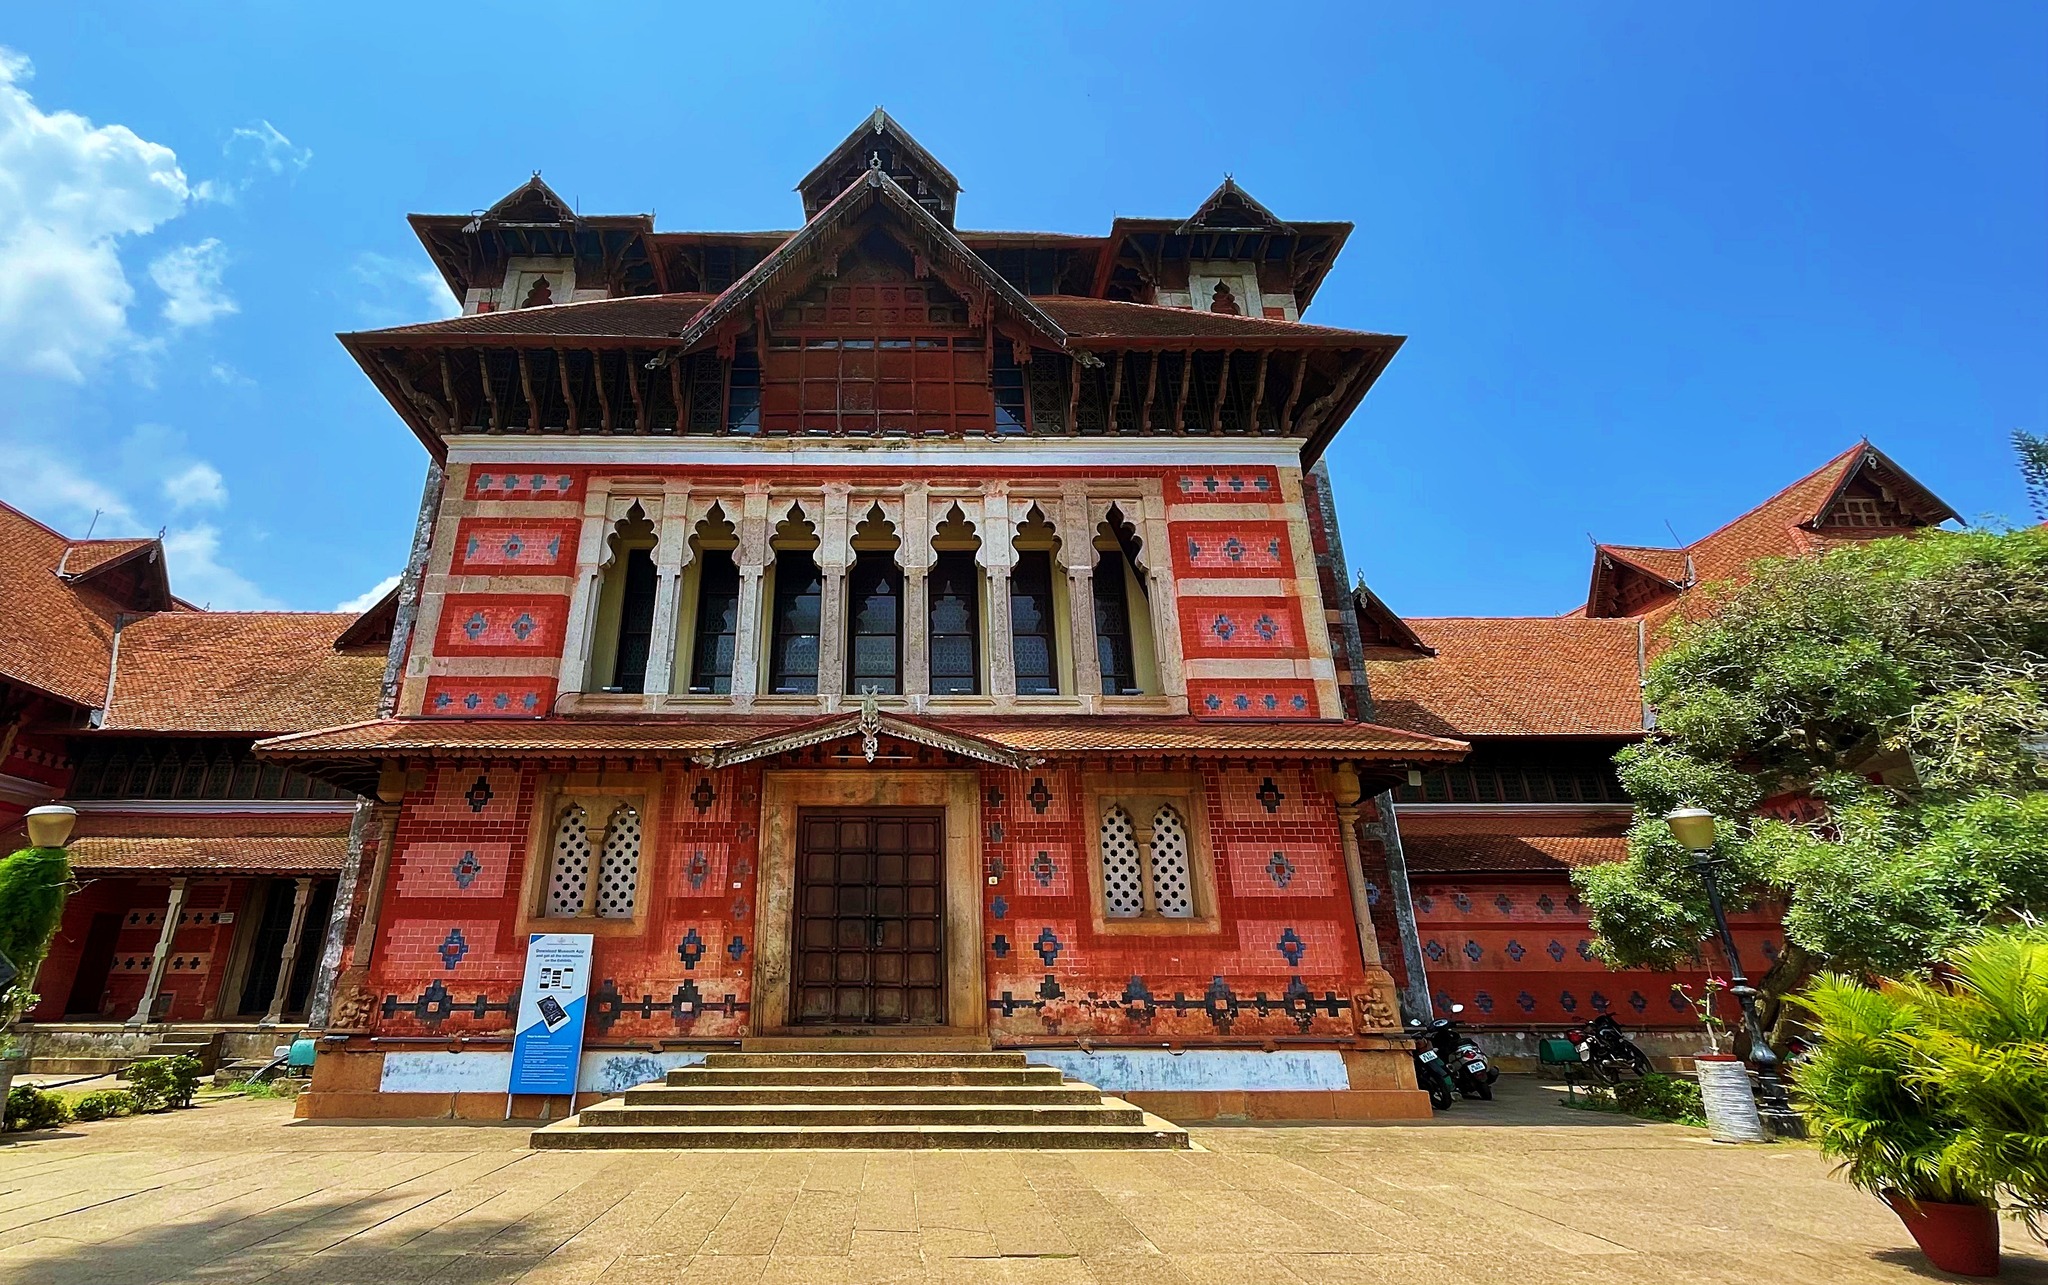 Napier Museum in Trivandrum